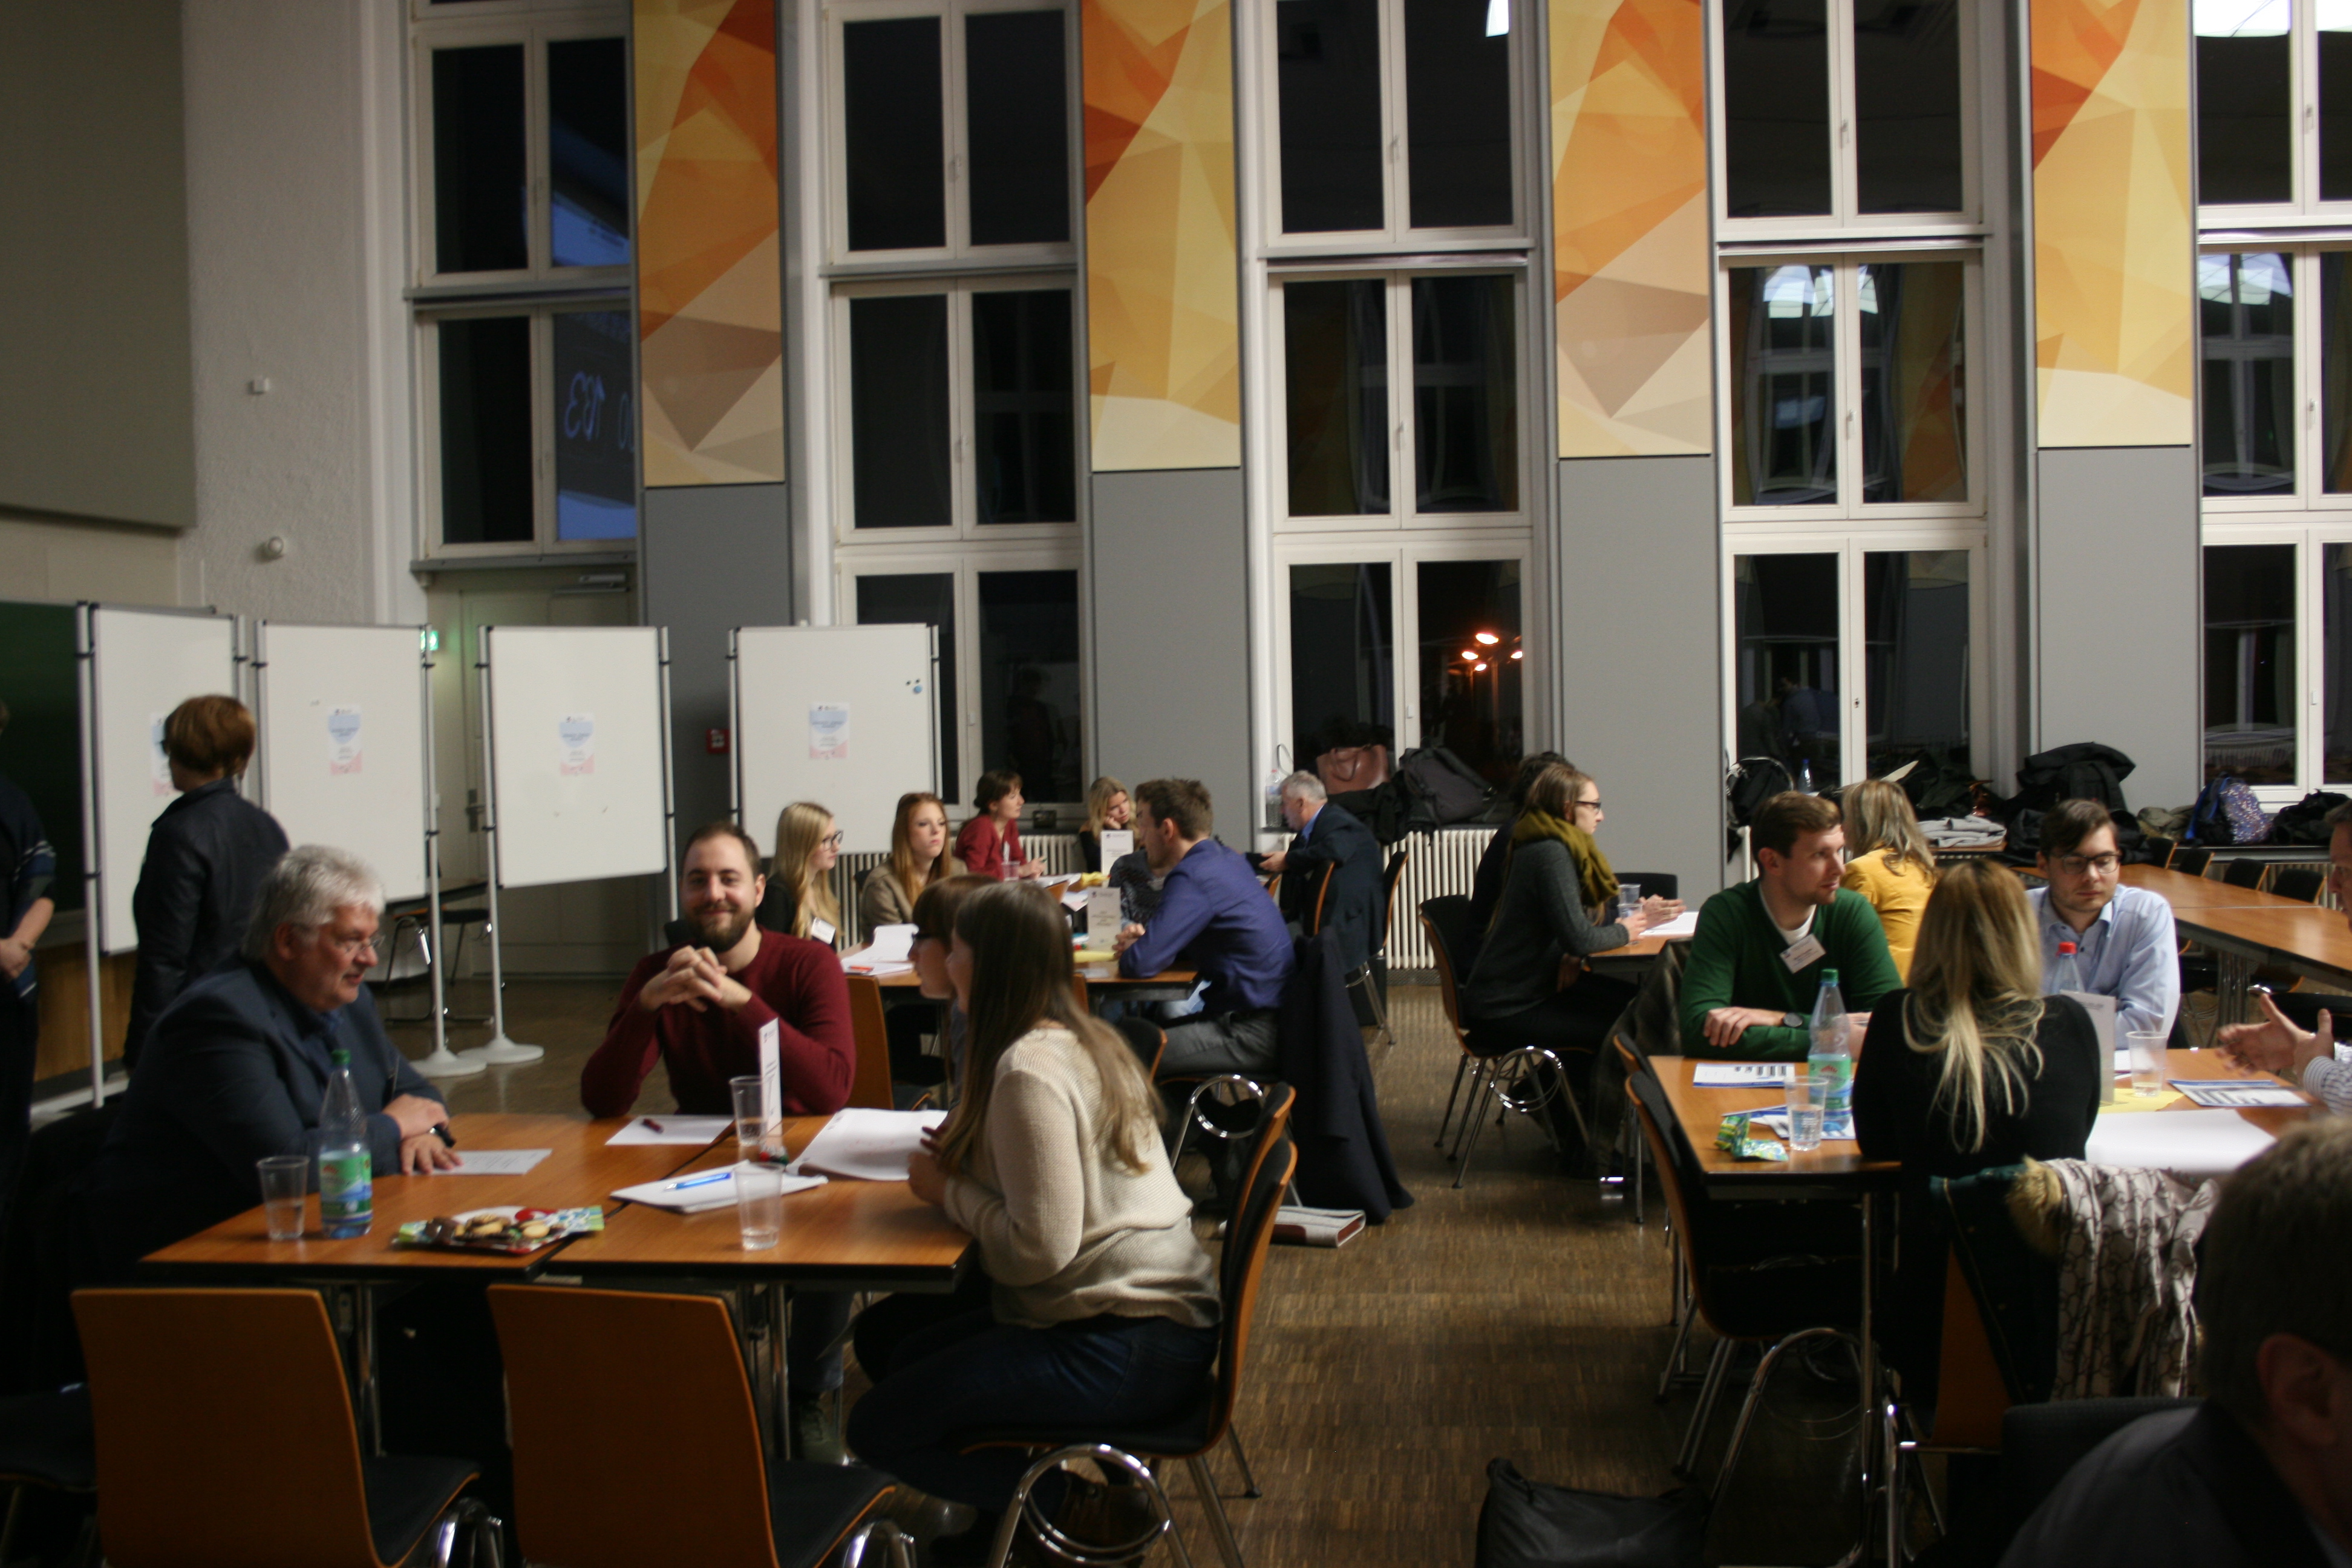 Foto: Unternehmer und Studentenstammtisch in der Aula Scheffelberg. Studierende und Unternehmensvertreter sitzen an verschiedenen Tischblöcken und tauschen sich untereinander aus.